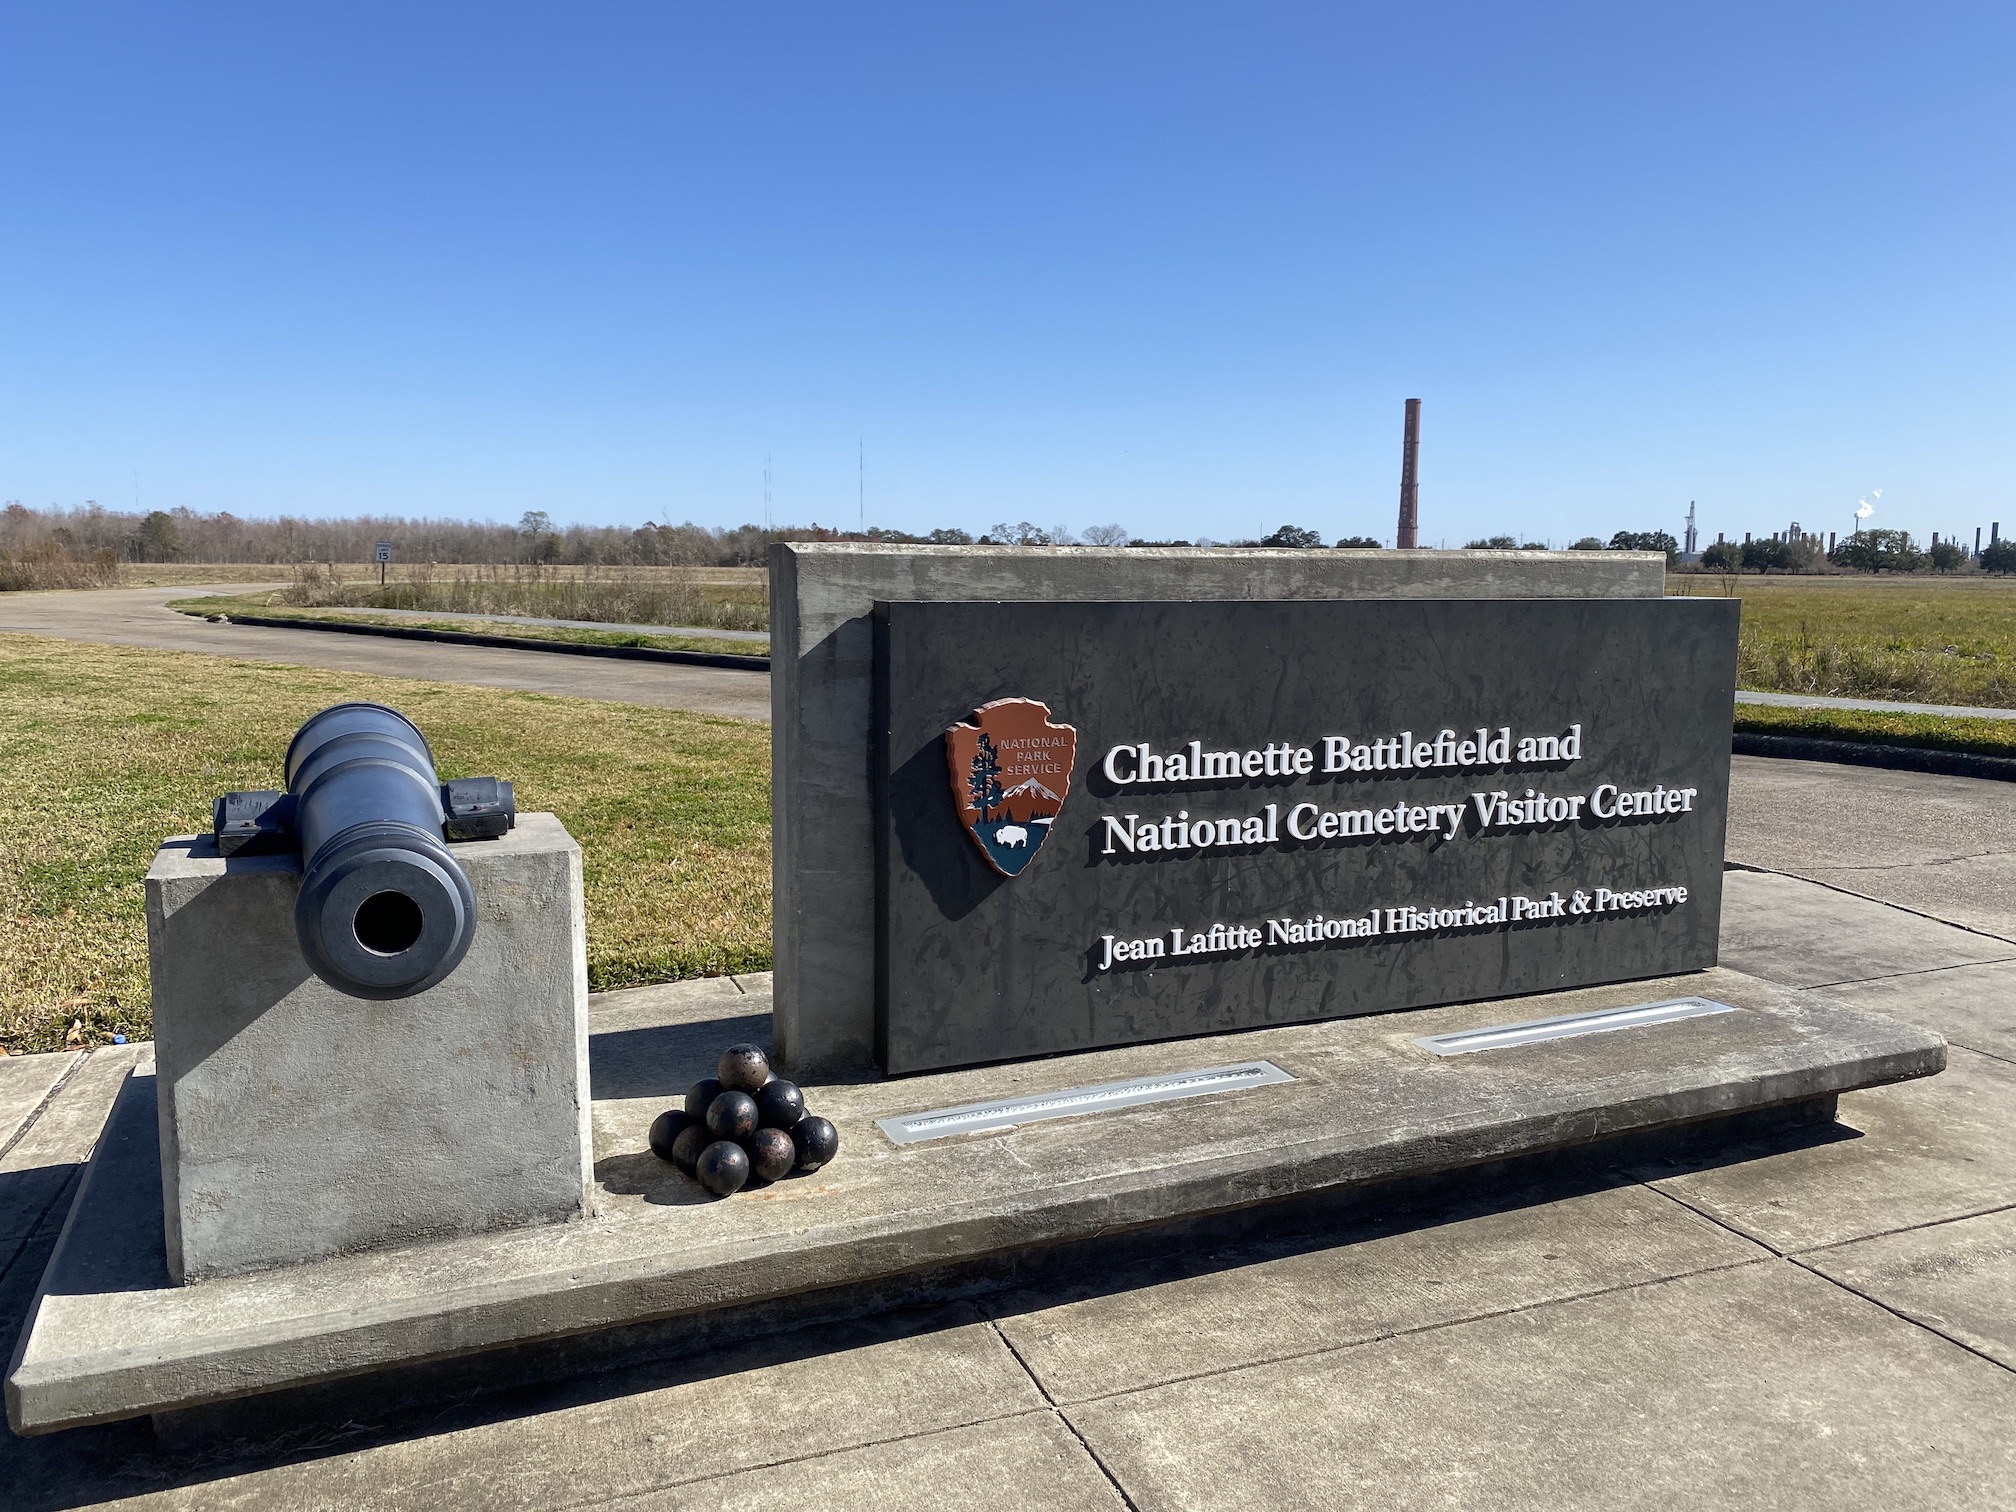 Chalmette Battlefield - Battle of New Orleans